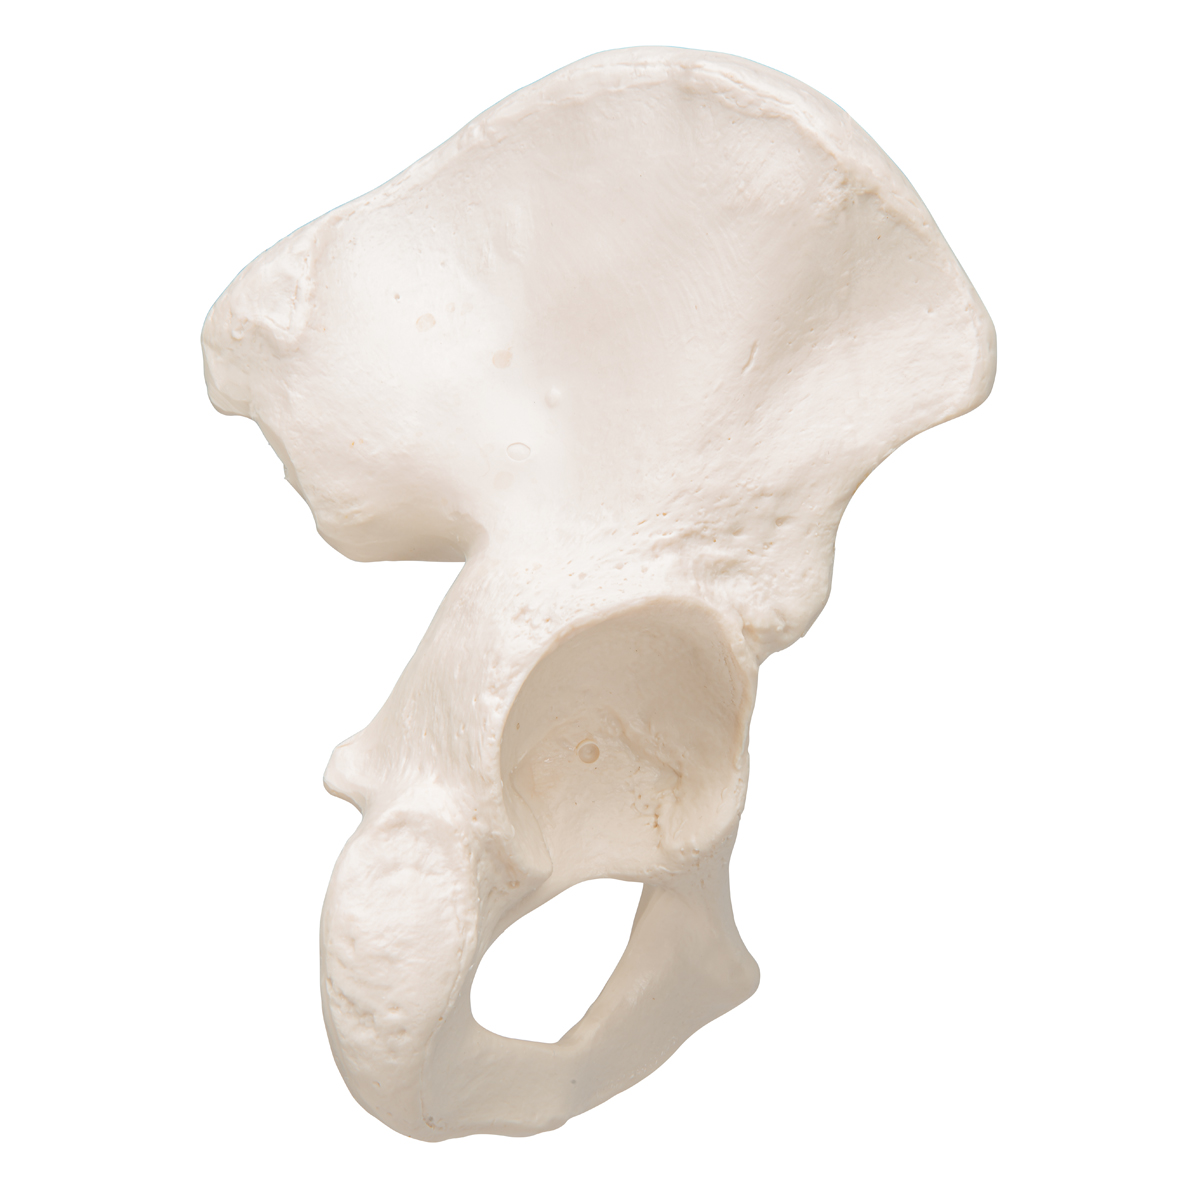 Hüftbein Knochen Modell - 3B Smart Anatomy - 1019365 - A35/5 - Fuß- und  Beinskelett Modelle - 3B Scientific